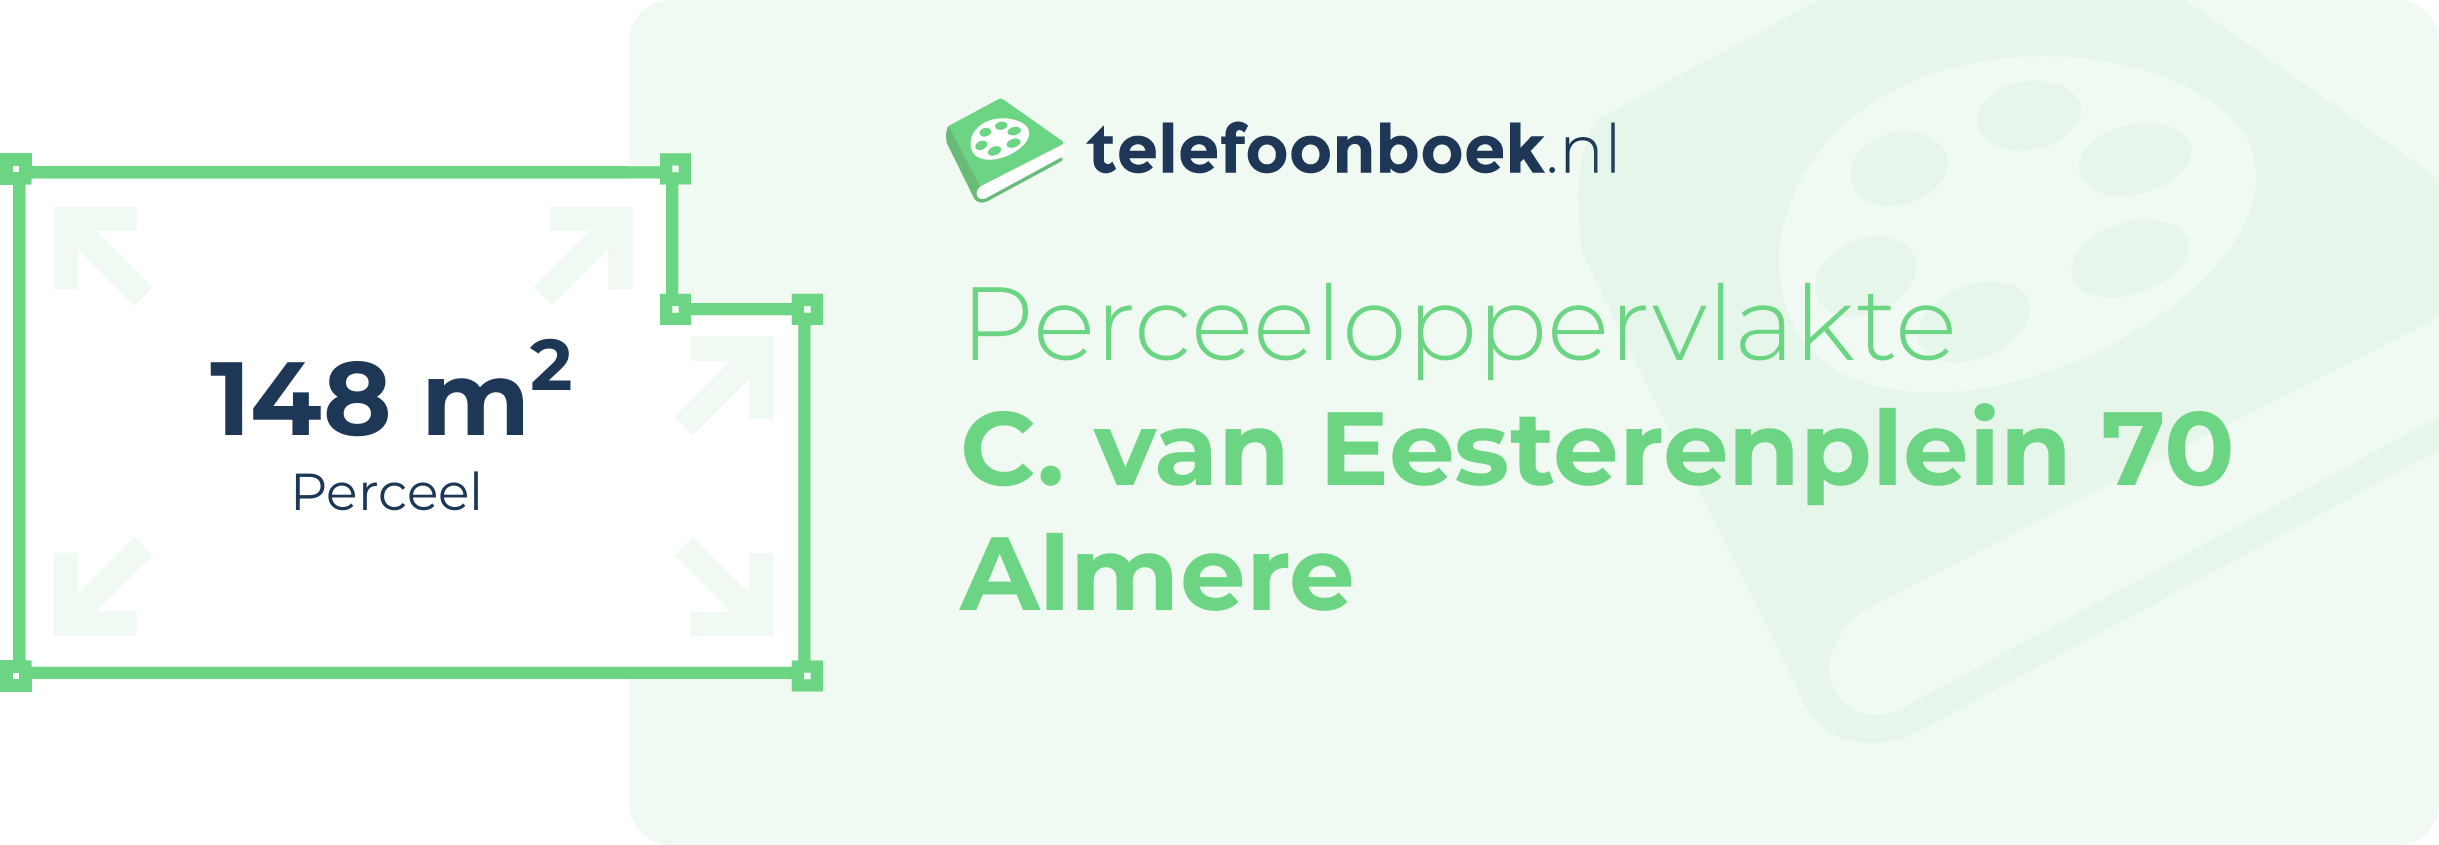 Perceeloppervlakte C. Van Eesterenplein 70 Almere